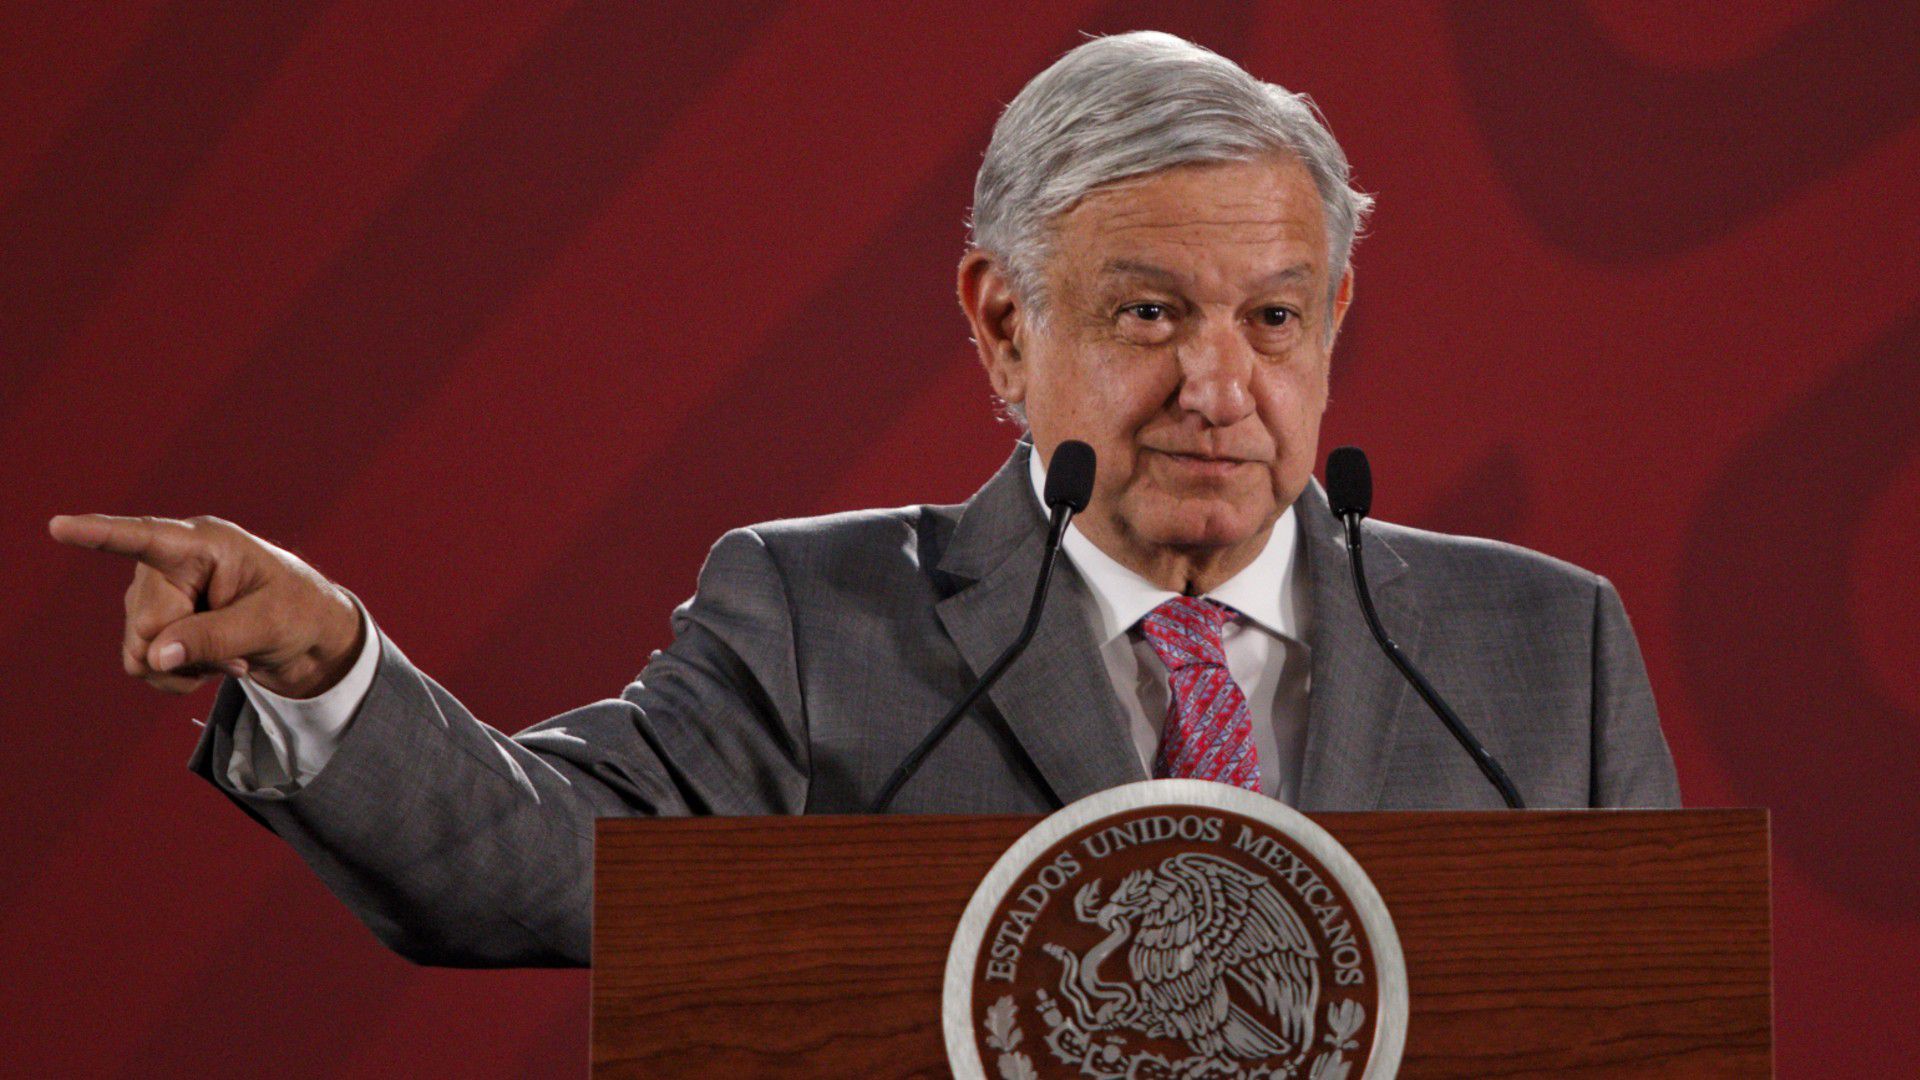 Desde el inicio de su gobierno, el presidente López Obrador ha despotricado en contra de los tecnócratas e instituciones, a las que llama corruptos y derrochadores (Foto: Cuartoocsuro)